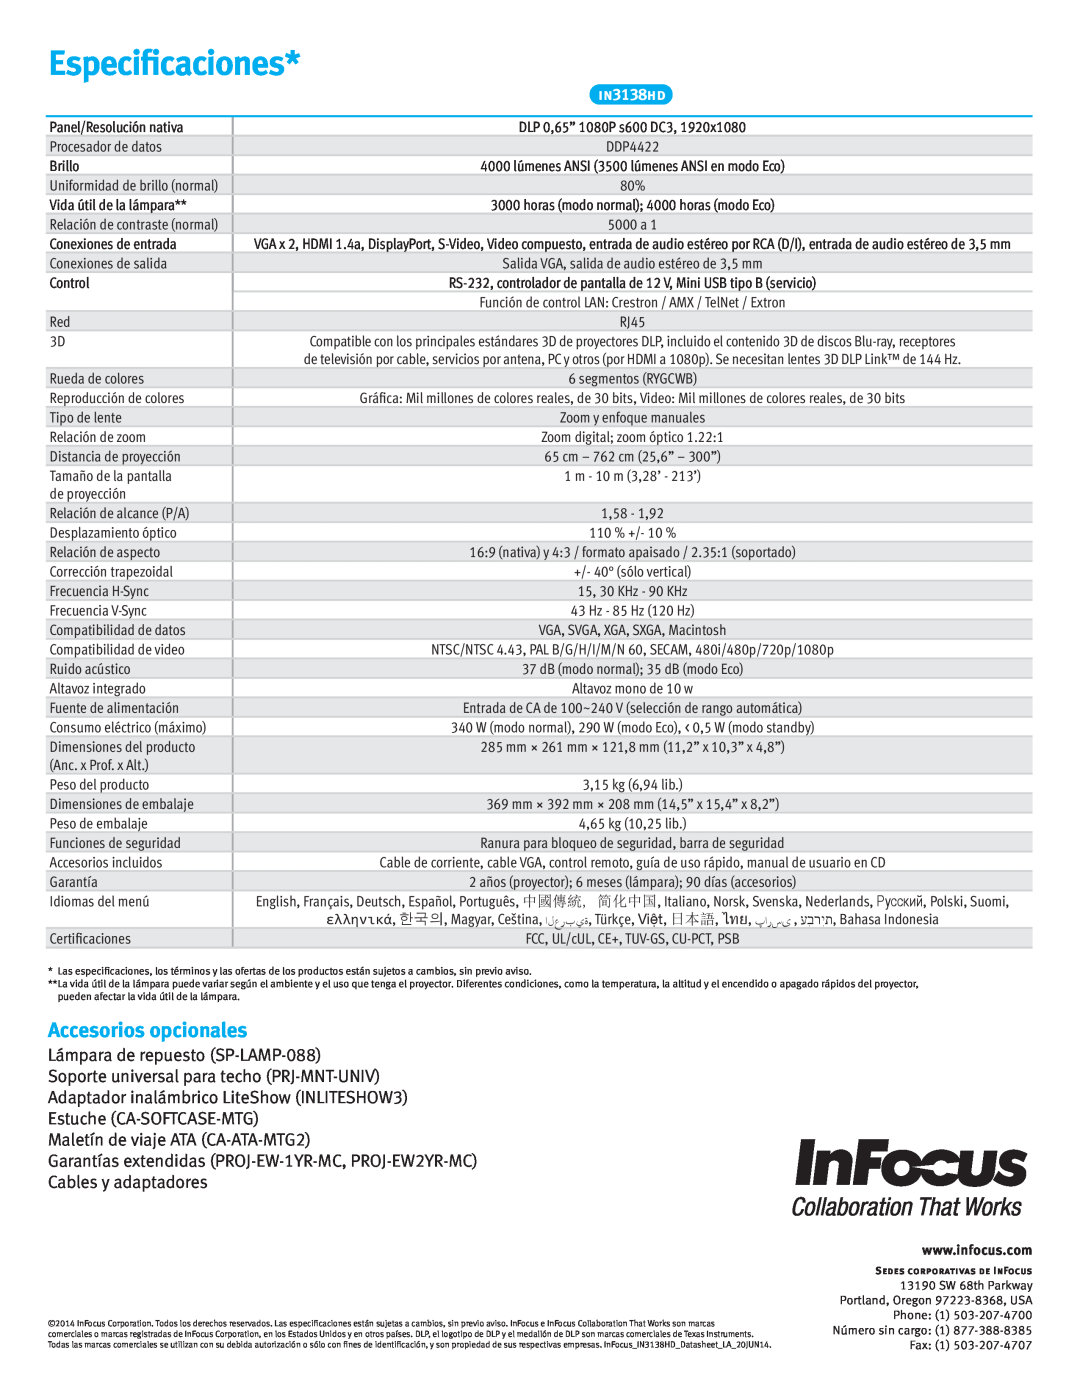 InFocus IN3138HD manual Especificaciones, Accesorios opcionales 